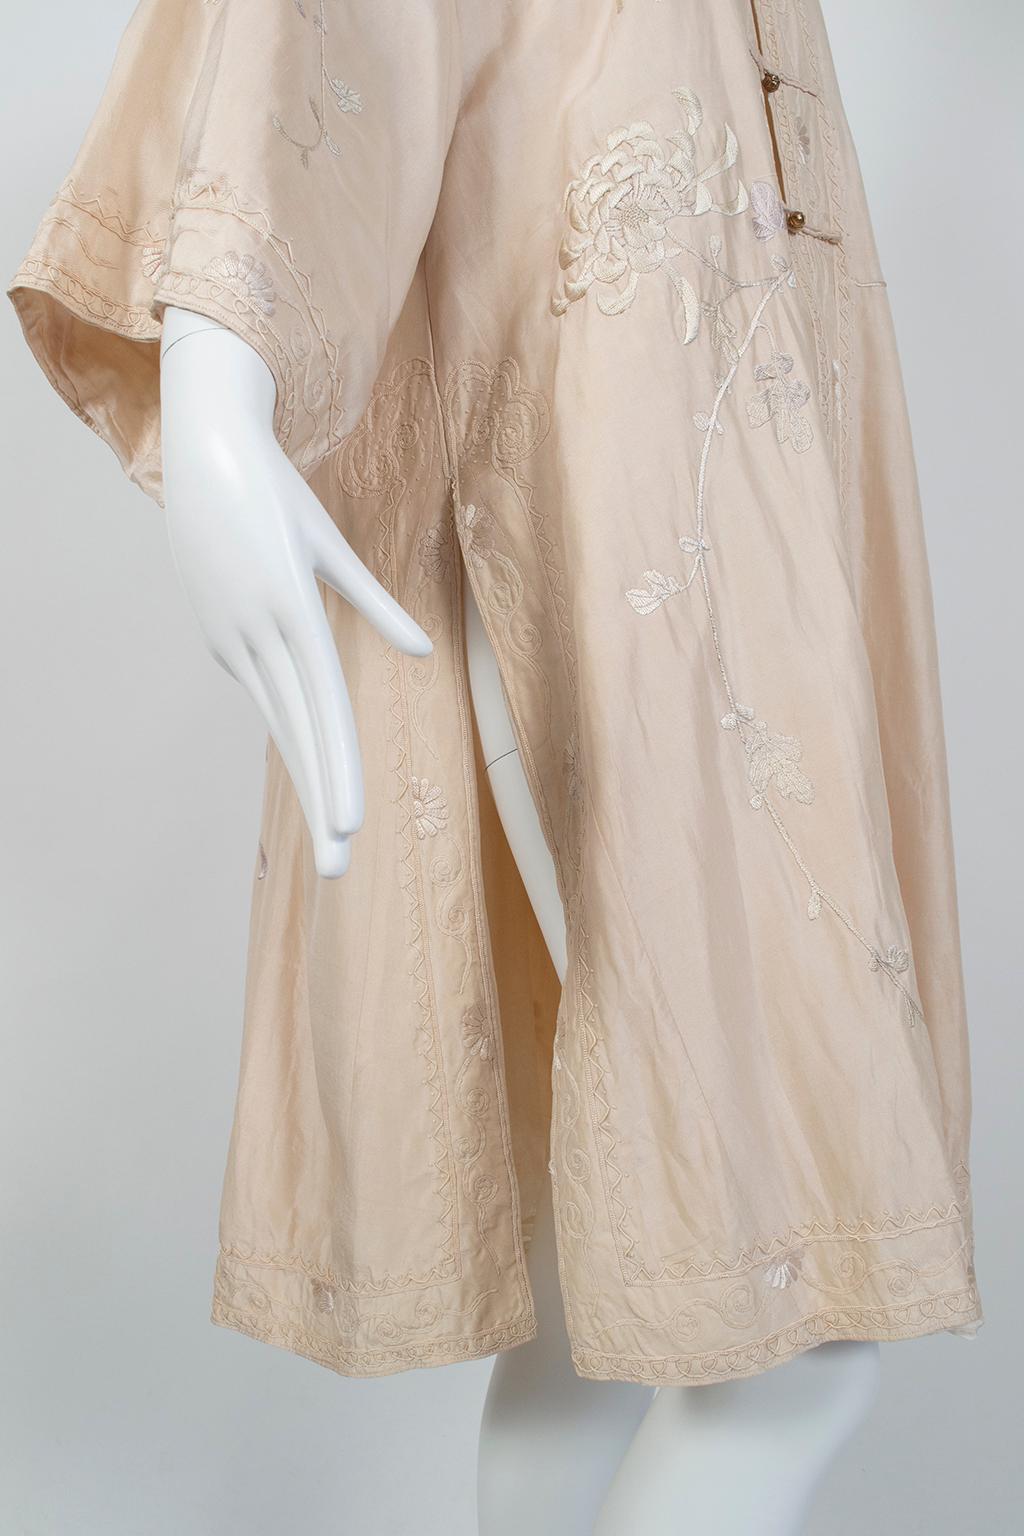 Robe édouardienne rose pâle en soie de Canton brodée (taille L/S), années 1900 en vente 6